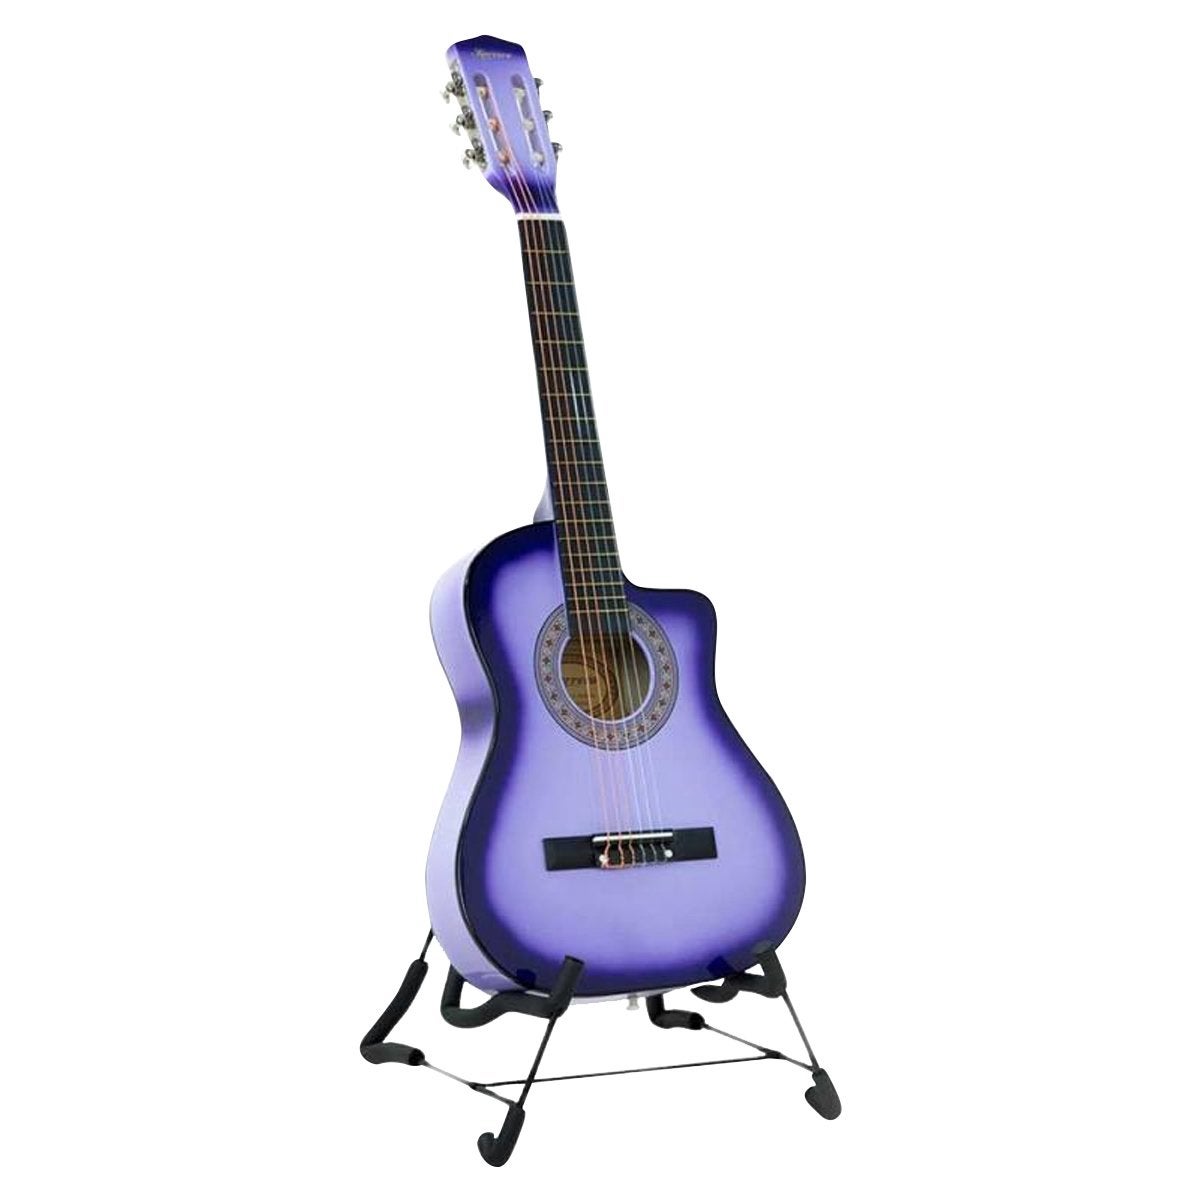 38in Purple Burst Karrera Acoustic Guitar With Pick Guard Strings Bag